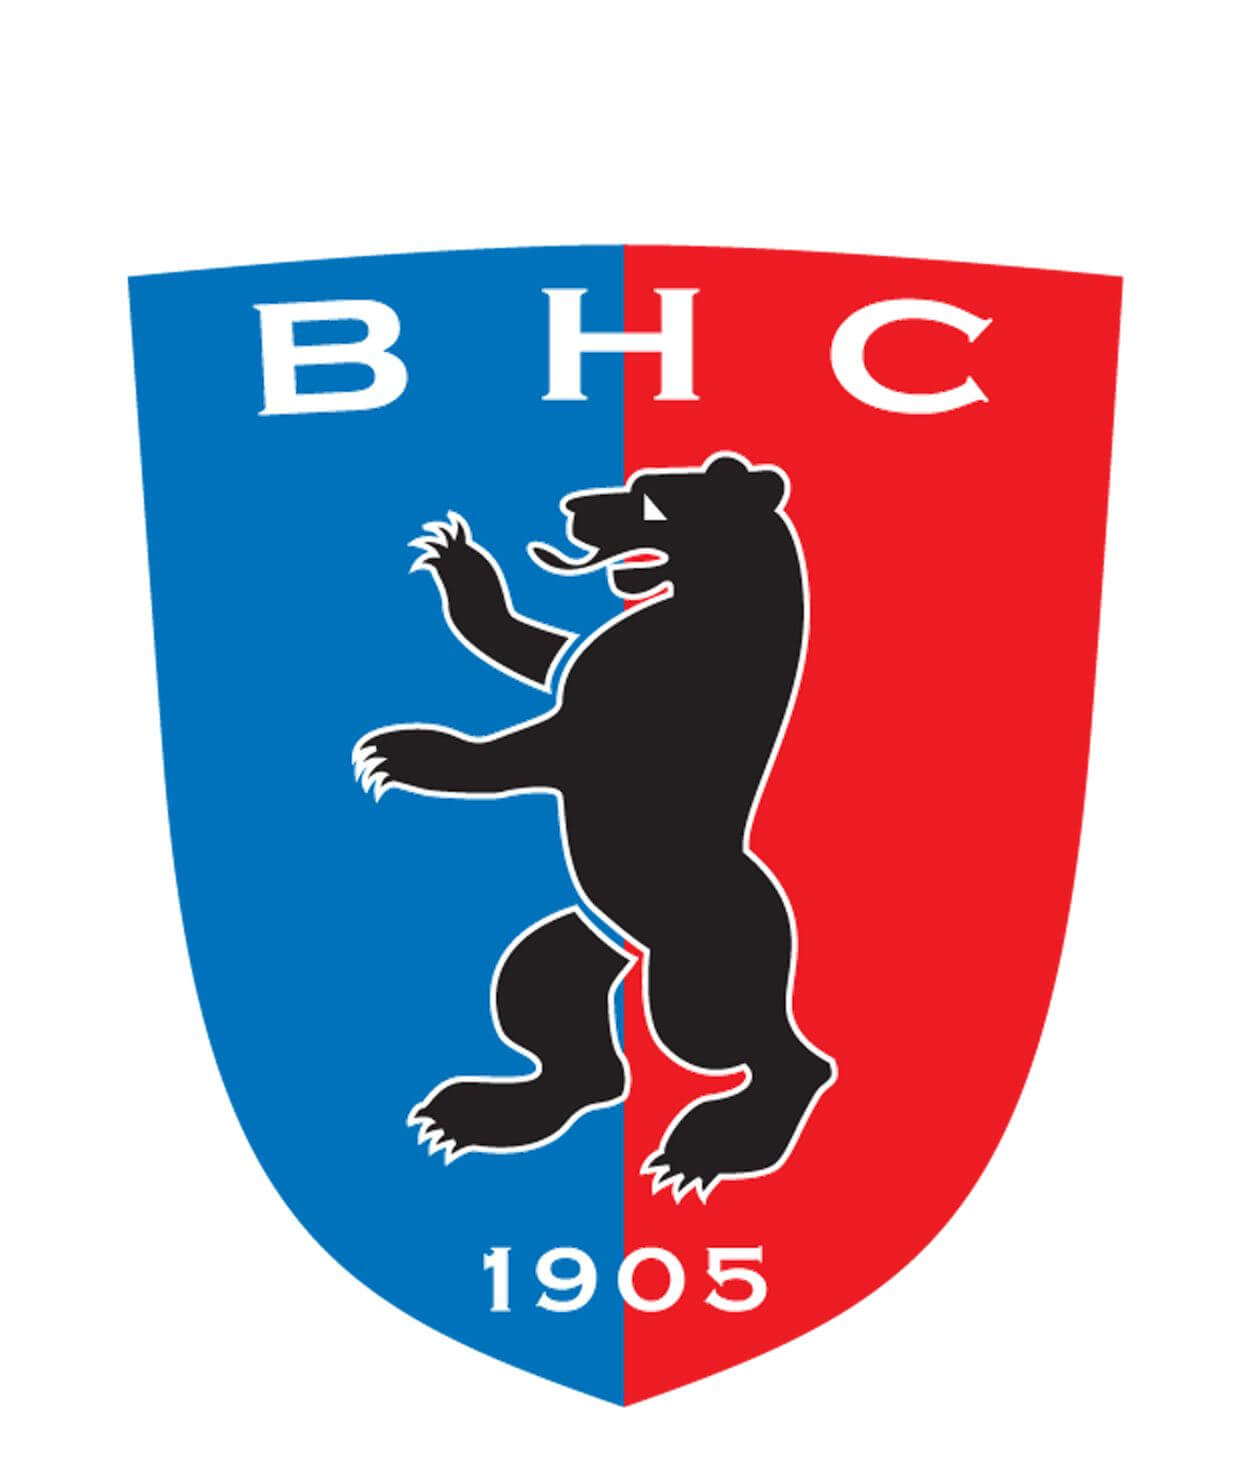 BHC richtet Deutsche Hallenhockey-Meisterschaft aus